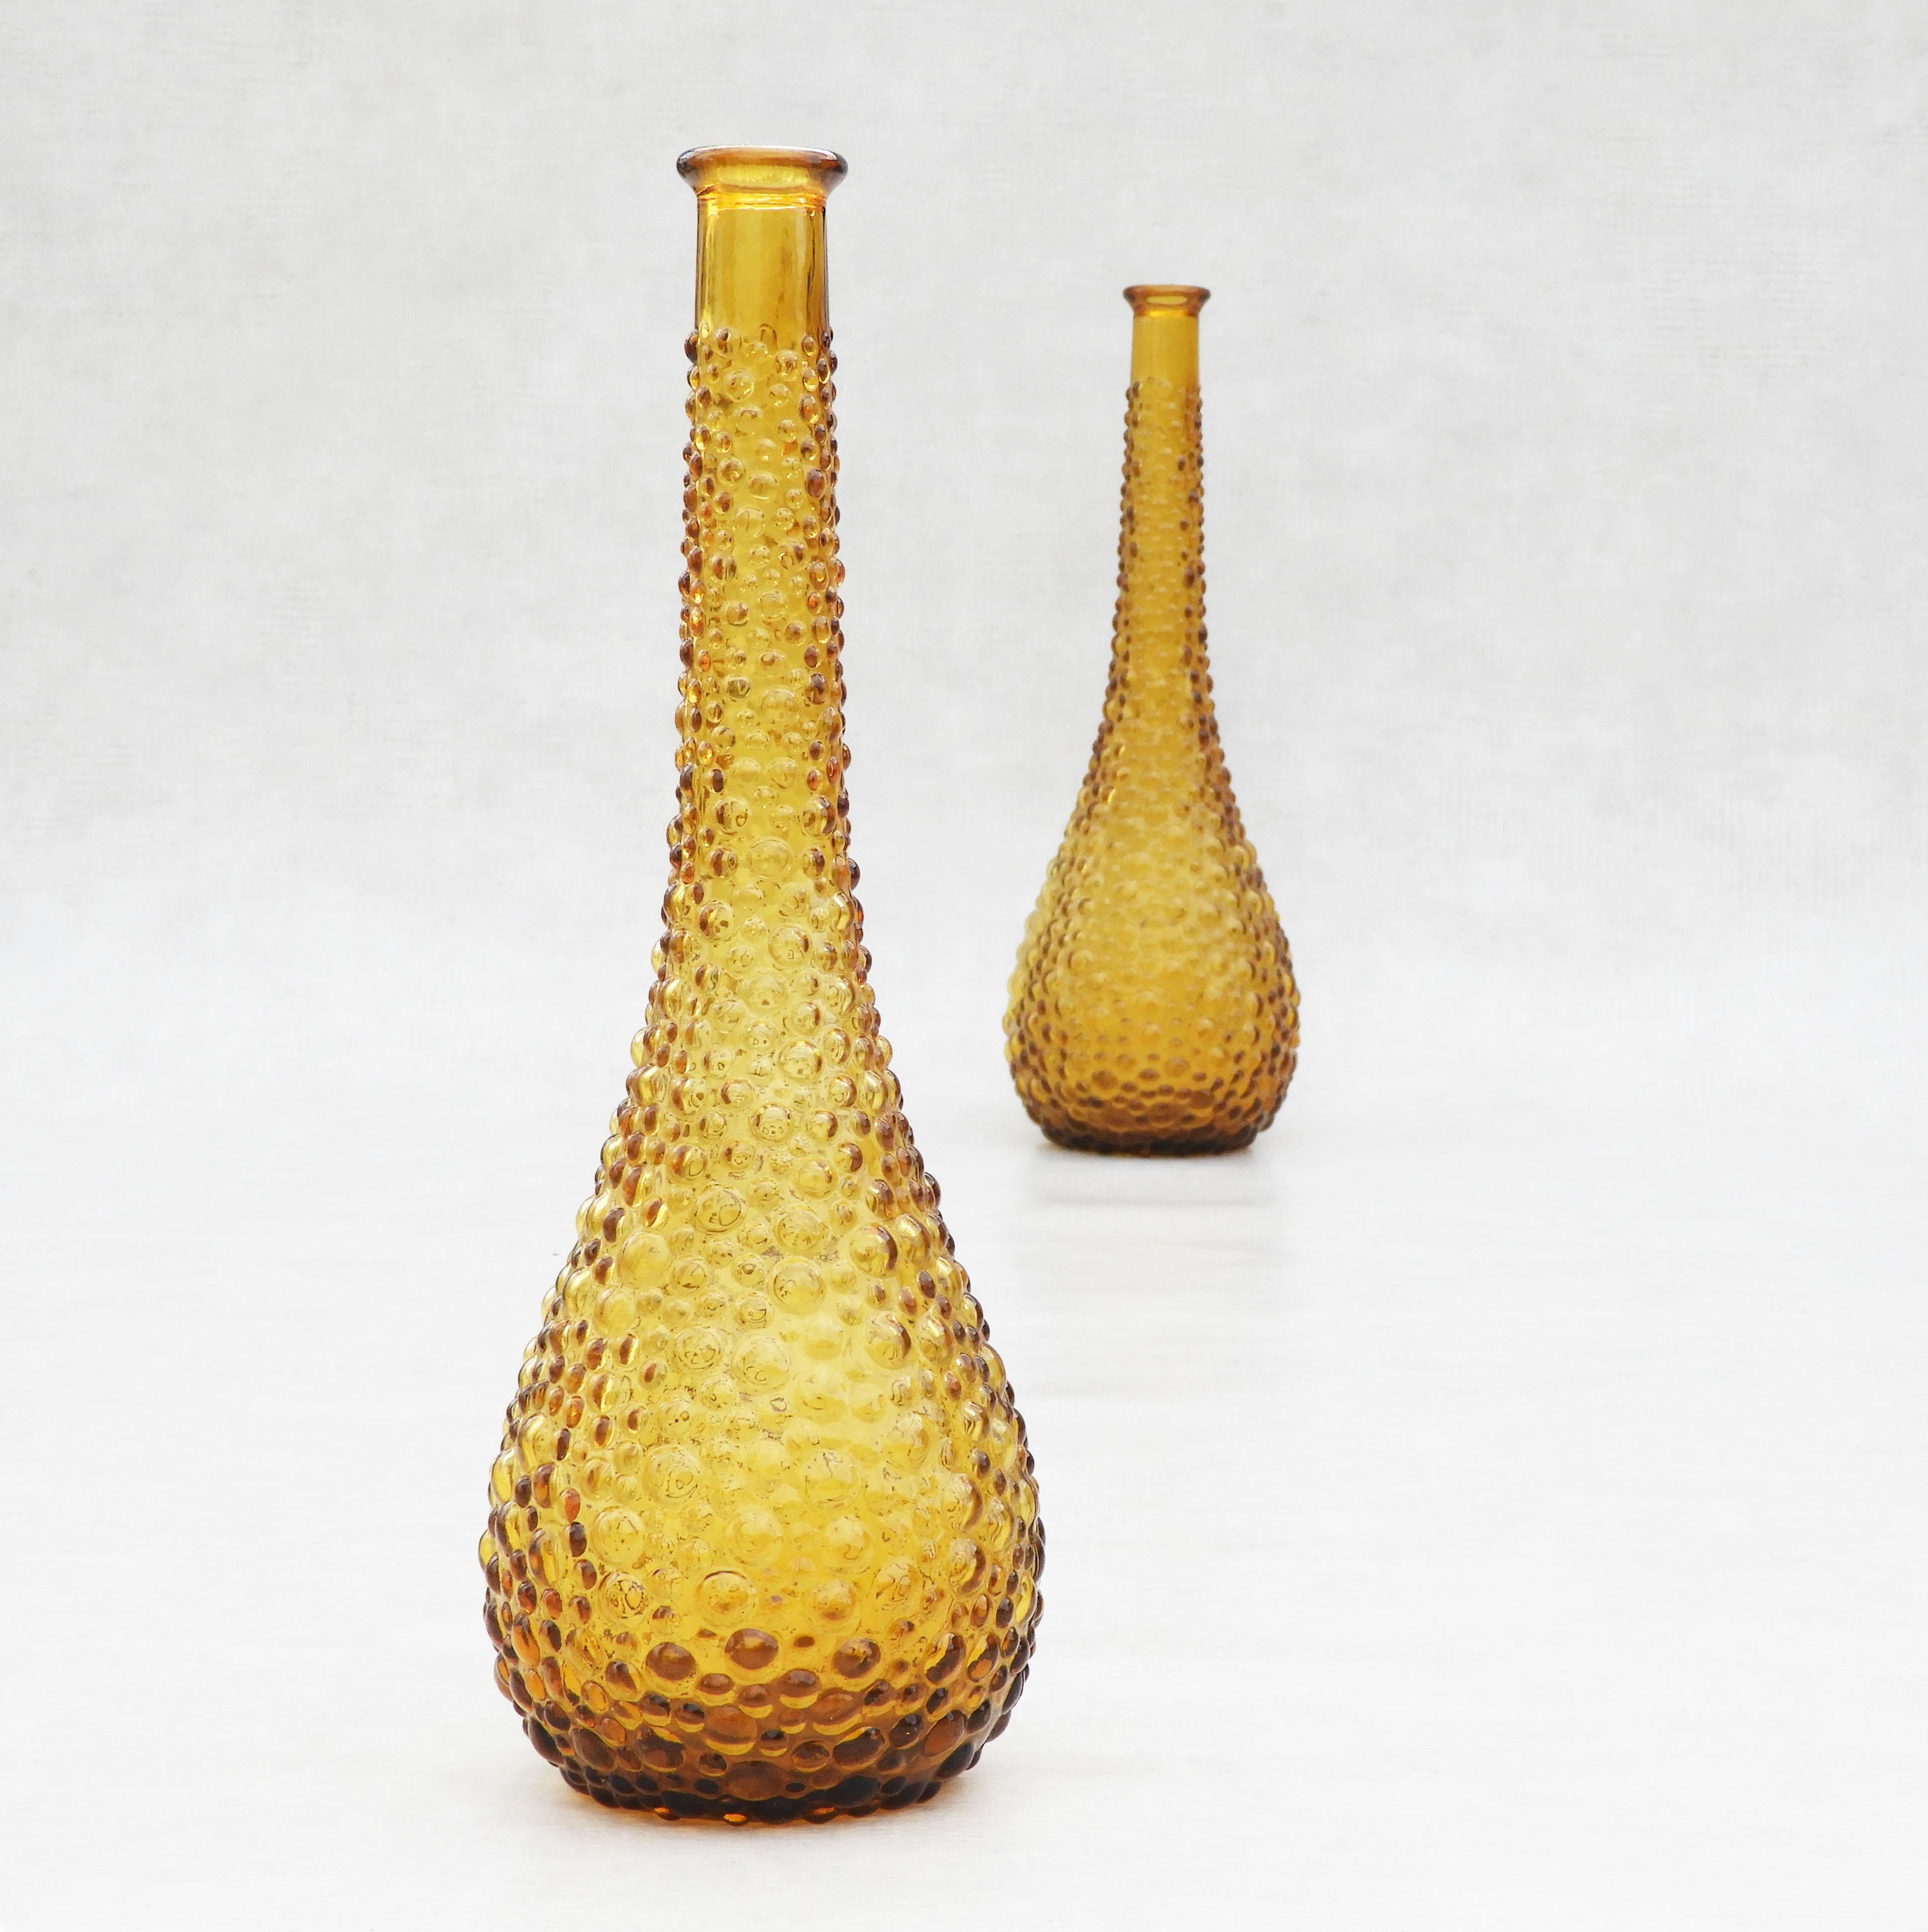 Vintage Paar stilvolle Flaschenvasen aus Braunglas von Empoli, Italien, C1960. 
Attraktive goldene Bernsteinfärbung und organisch geformte, strukturierte Blasenoberfläche.
In sehr gutem Vintage-Zustand ohne Schäden am Glas.

Abmessungen: